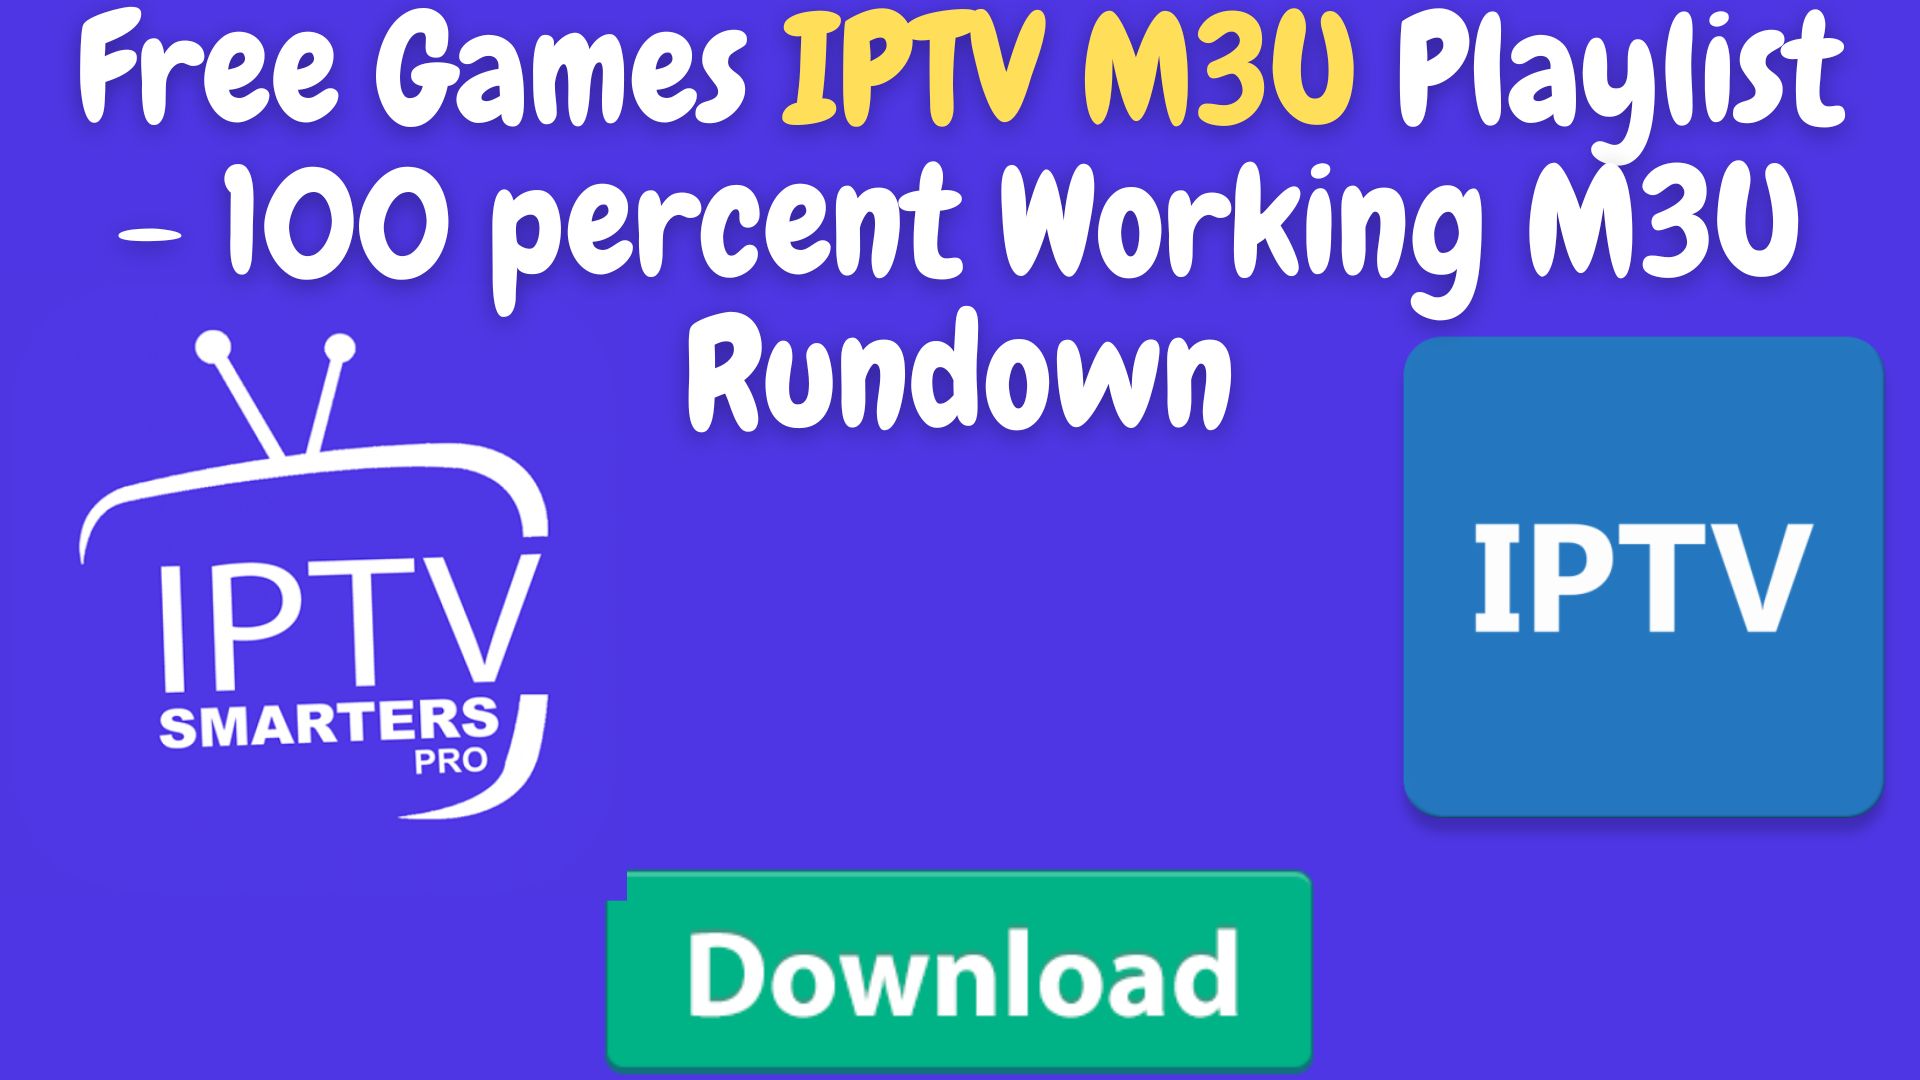 Free Games Iptv M3U Playlist - 100 Percent Working M3U Rundown